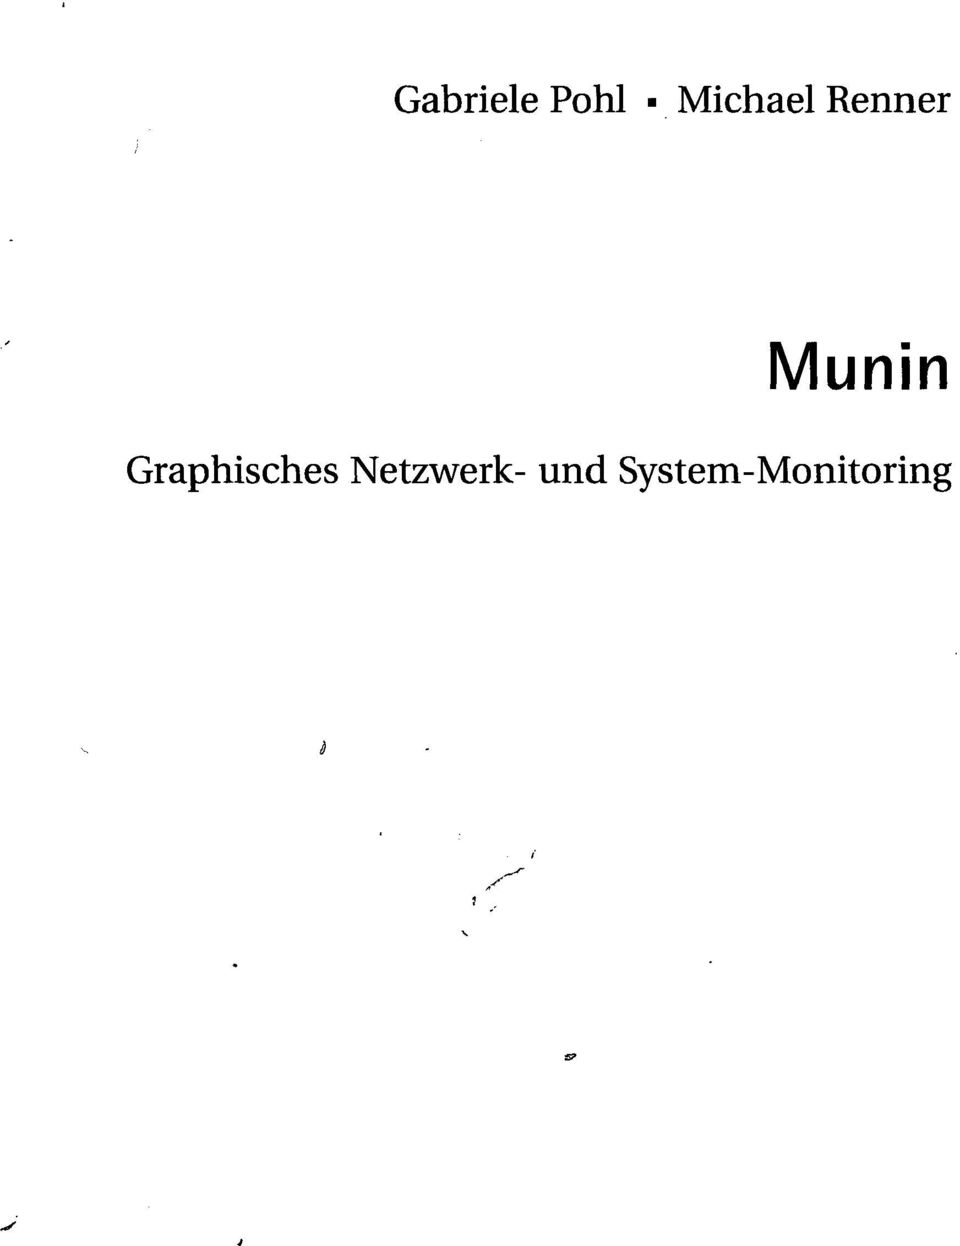 Munin Graphisches